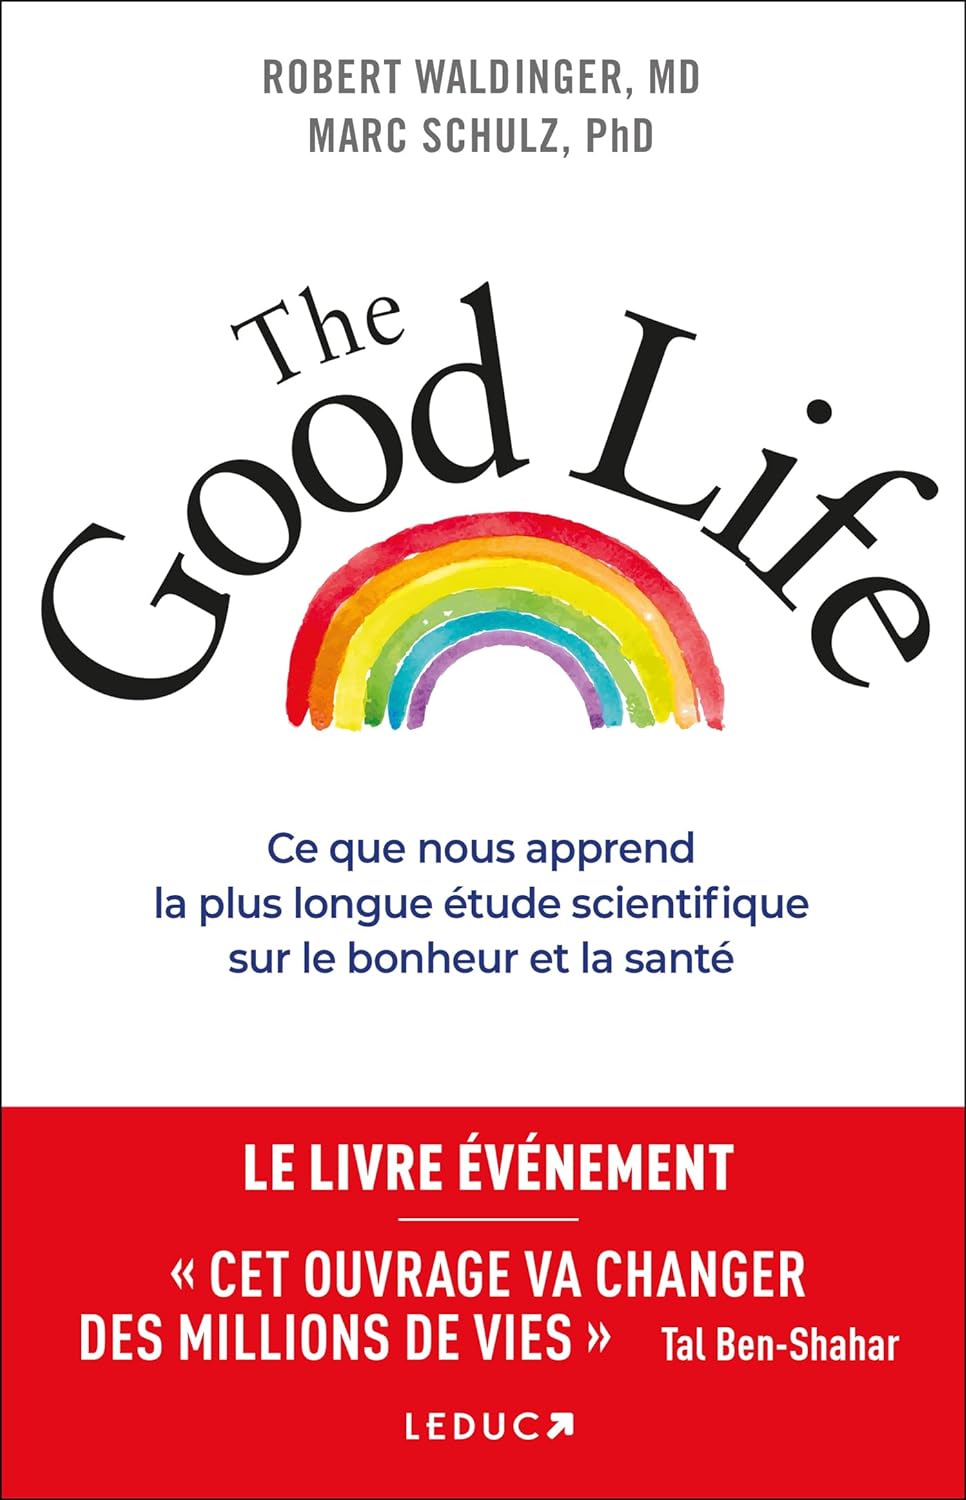 Cover van ‘The Good Life’ van Robert Waldinger en Marc Schulz